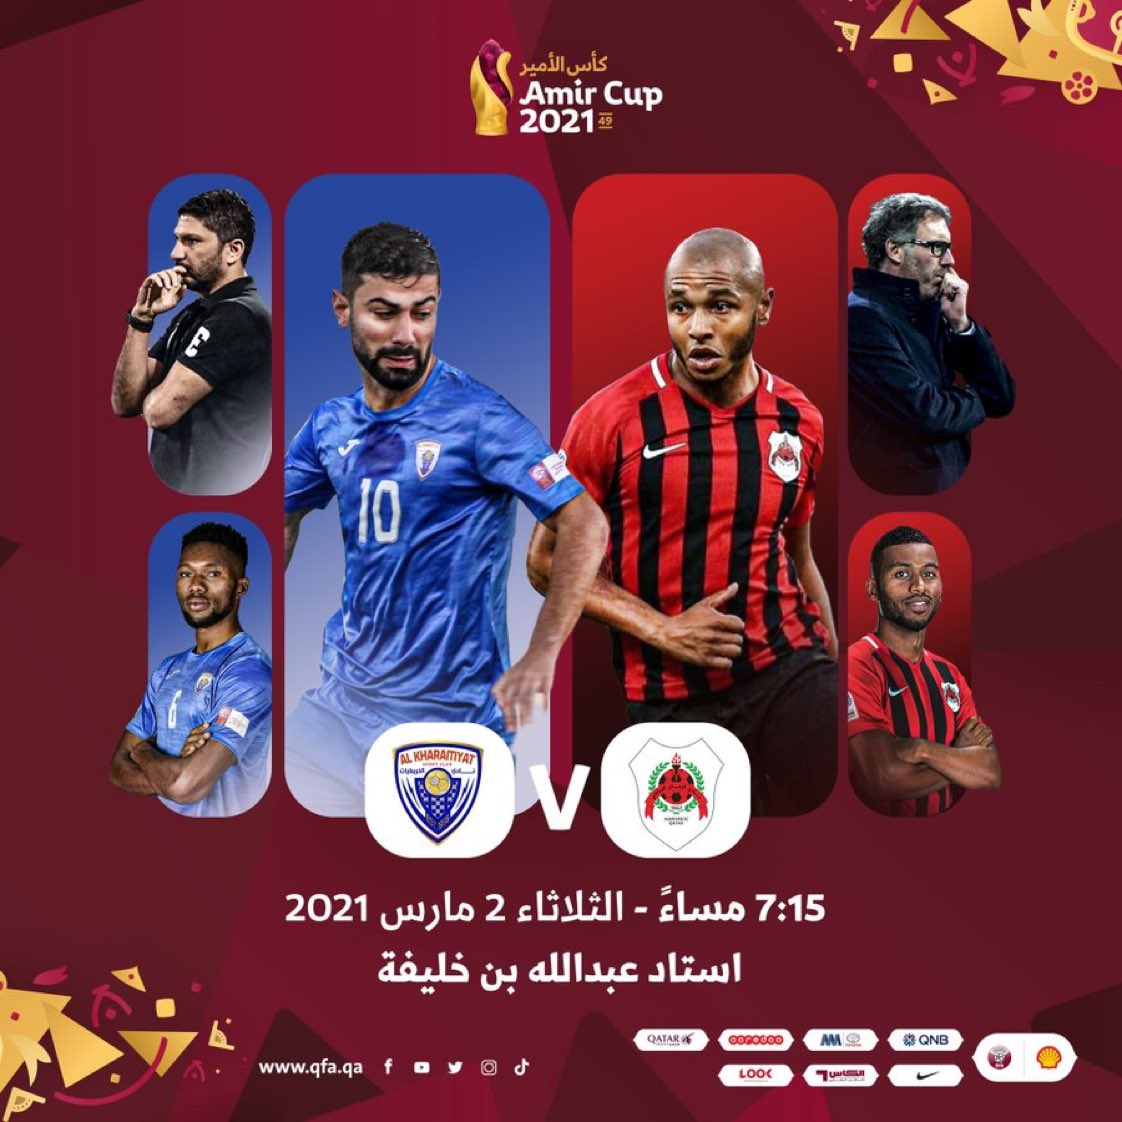 دور الـ8 لبطولة كأس الأمير الريان 🆚 الخريطيات 2 مارس 2021 ⏰ 7 15 مساءً استاد عبدالله بن خليفة